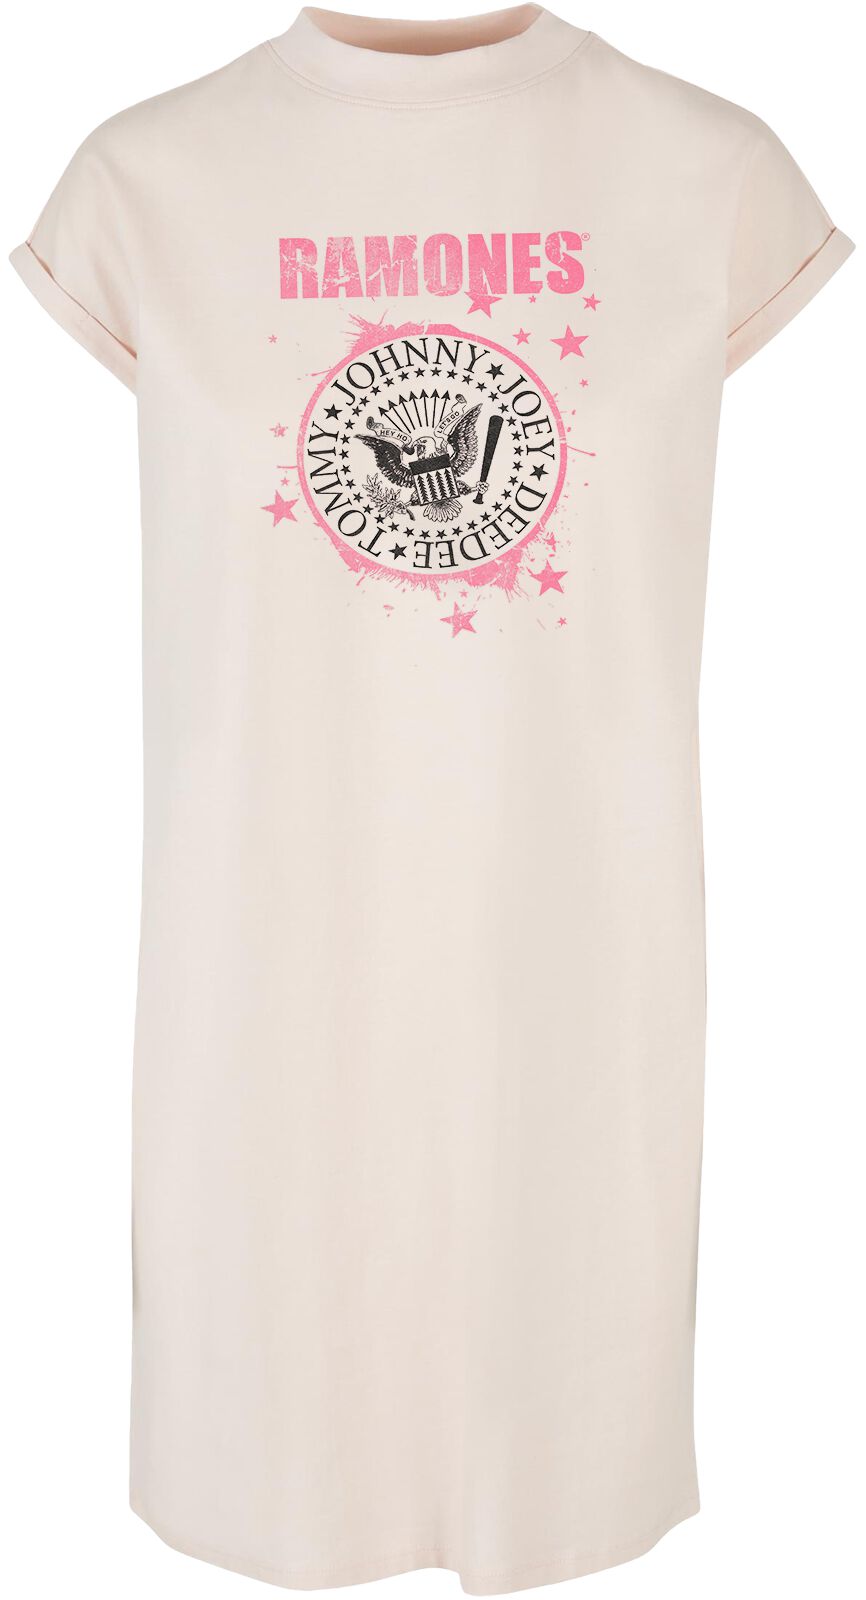 Ramones Kleid knielang - Splash Crest - S bis XXL - für Damen - Größe XL - pink  - Lizenziertes Merchandise!